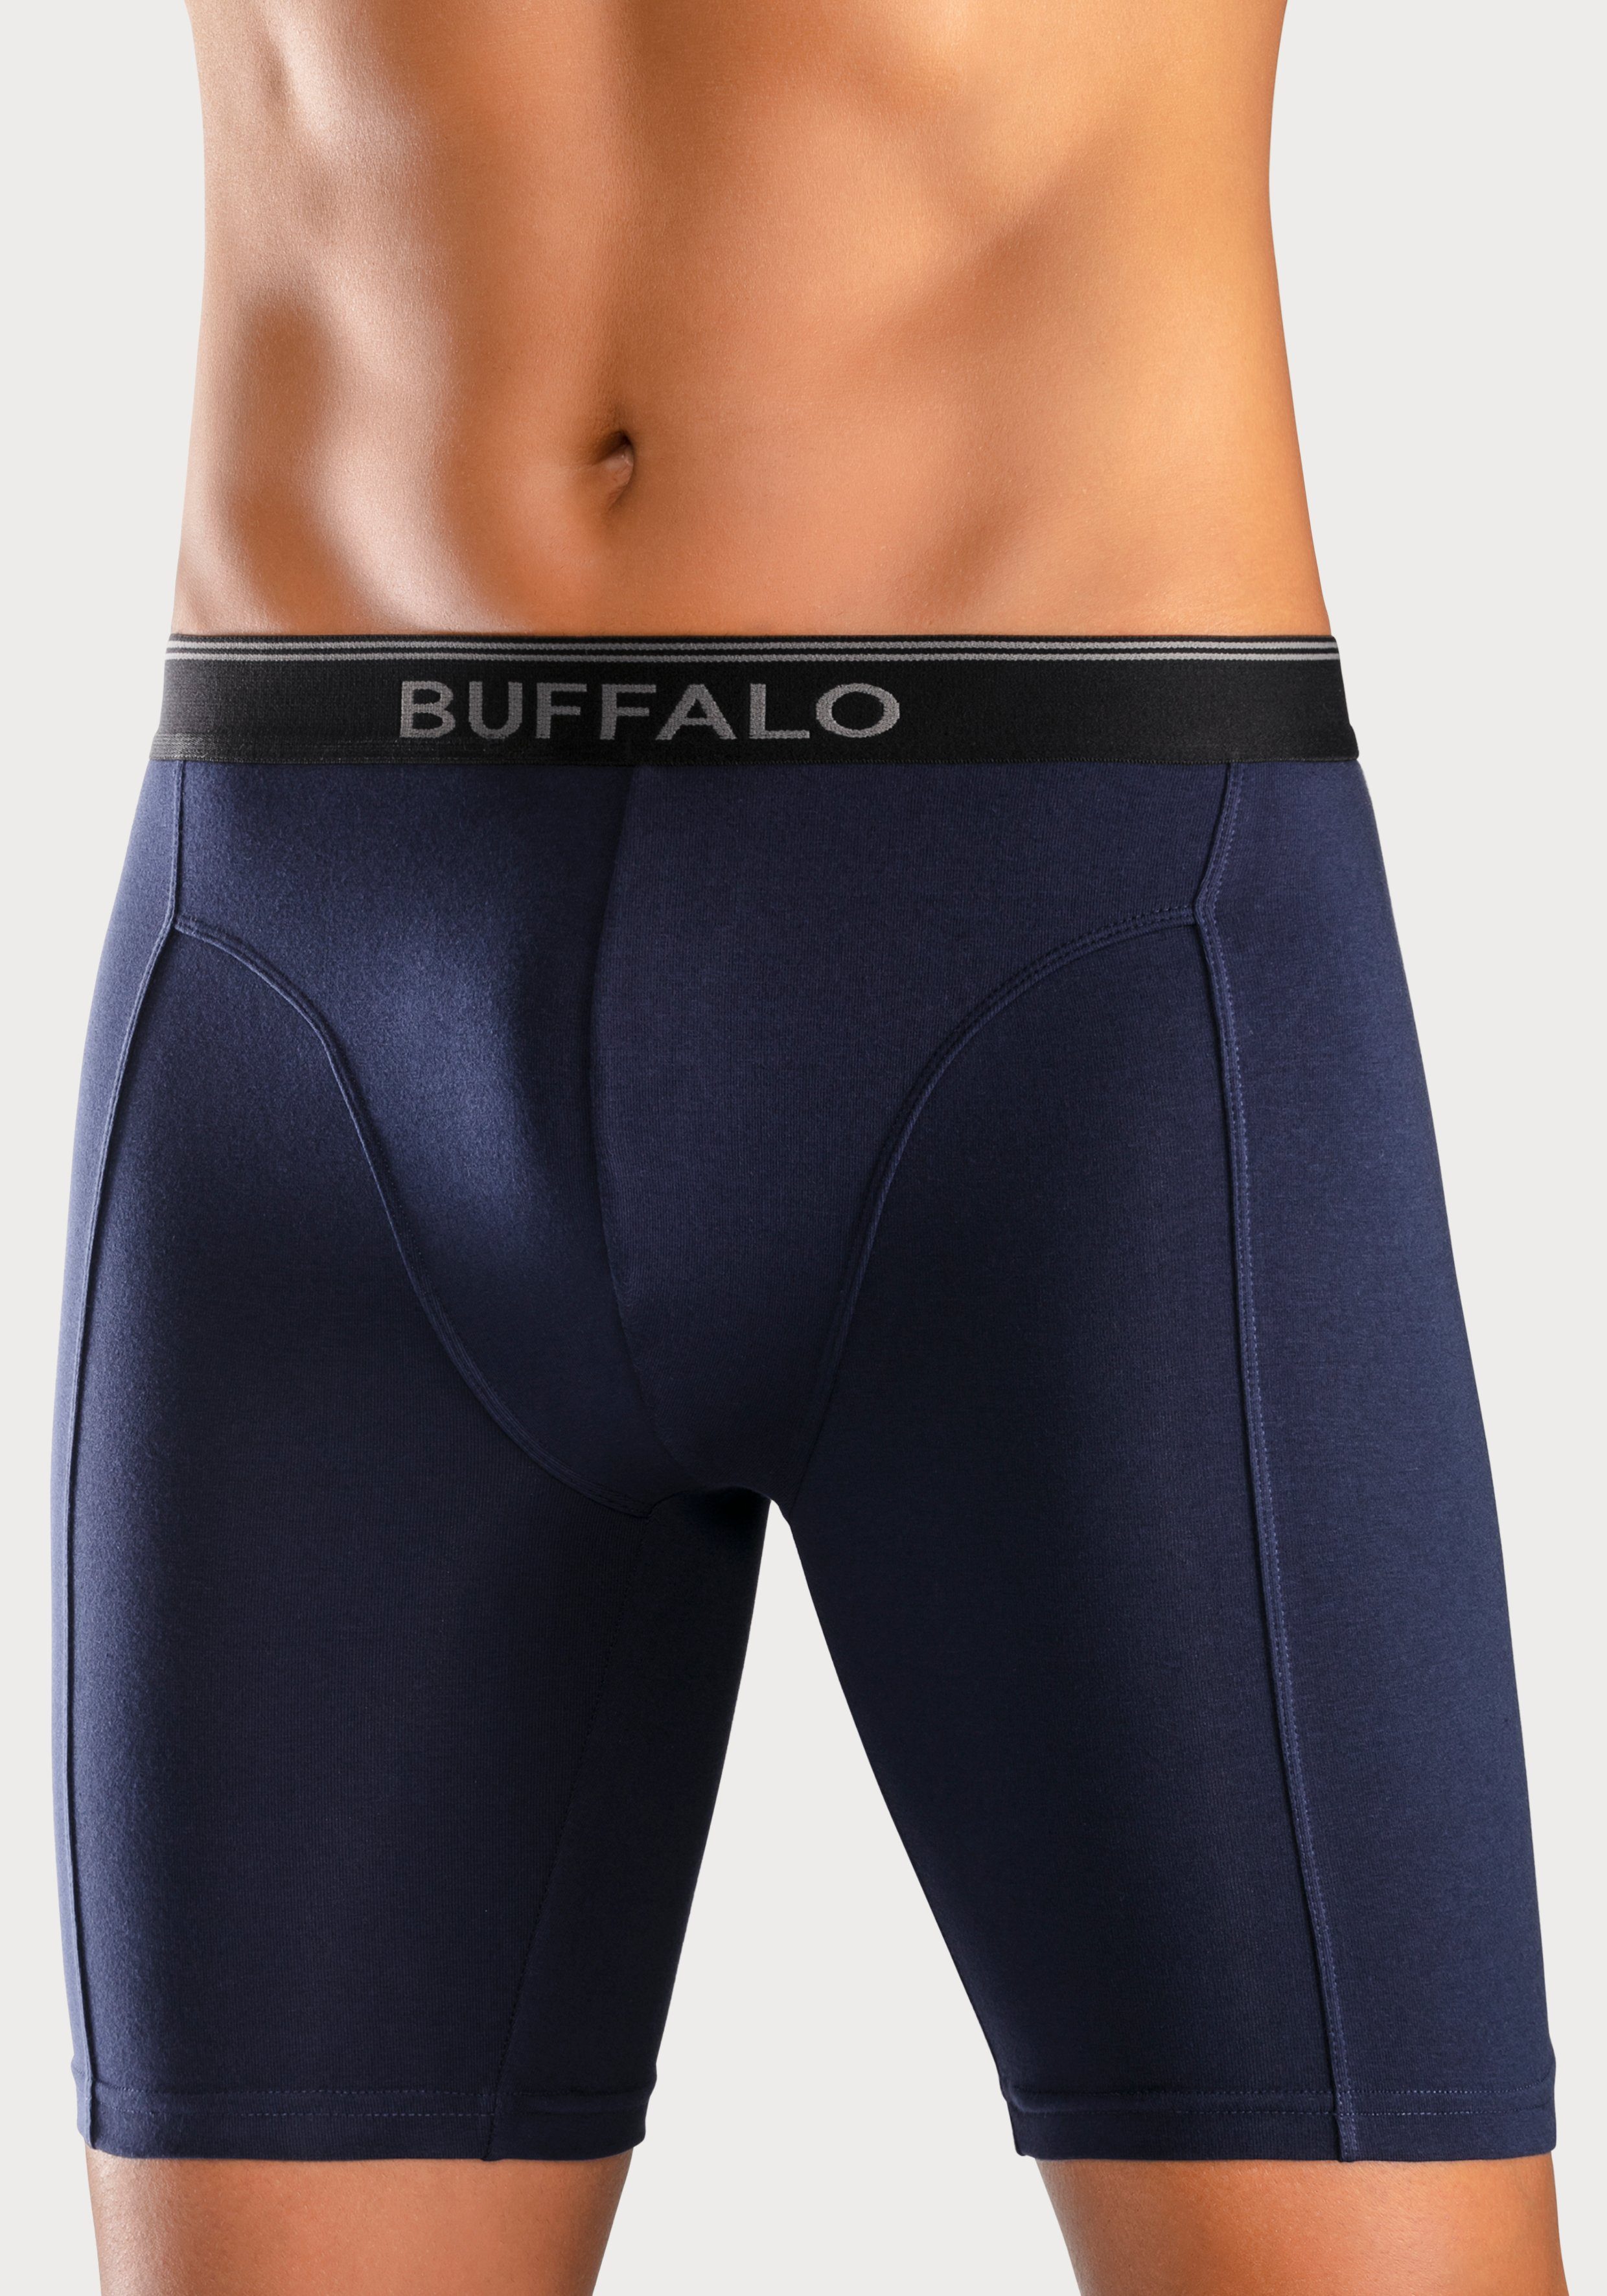 Buffalo langer Trekking Boxer 3-St) in und navy auch grau, (Packung, ideal Form Sport aquablau, für